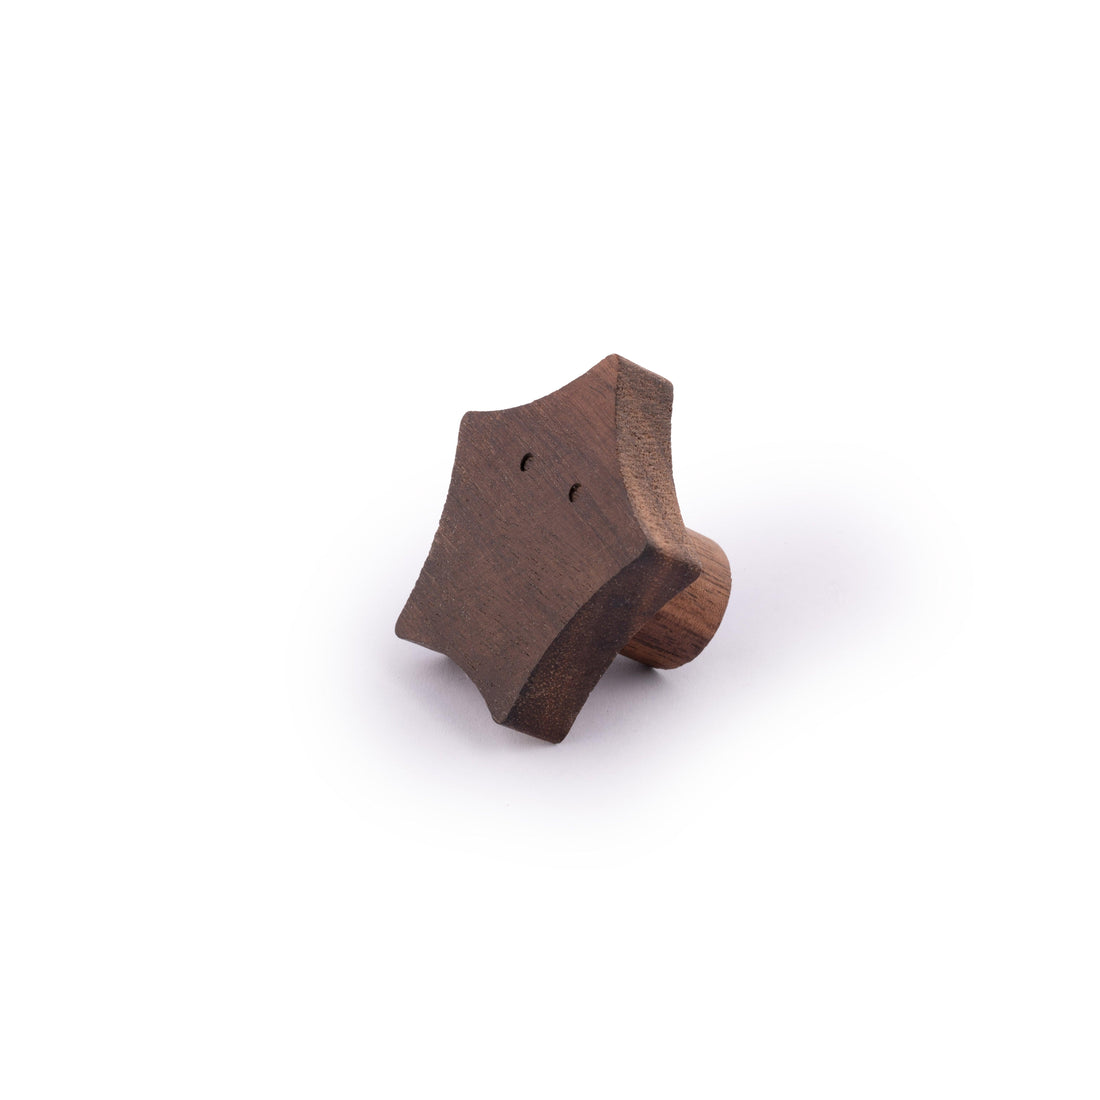 Starfish Wooden Hook Hook 60mm / Walnut / Wood - M A N T A R A